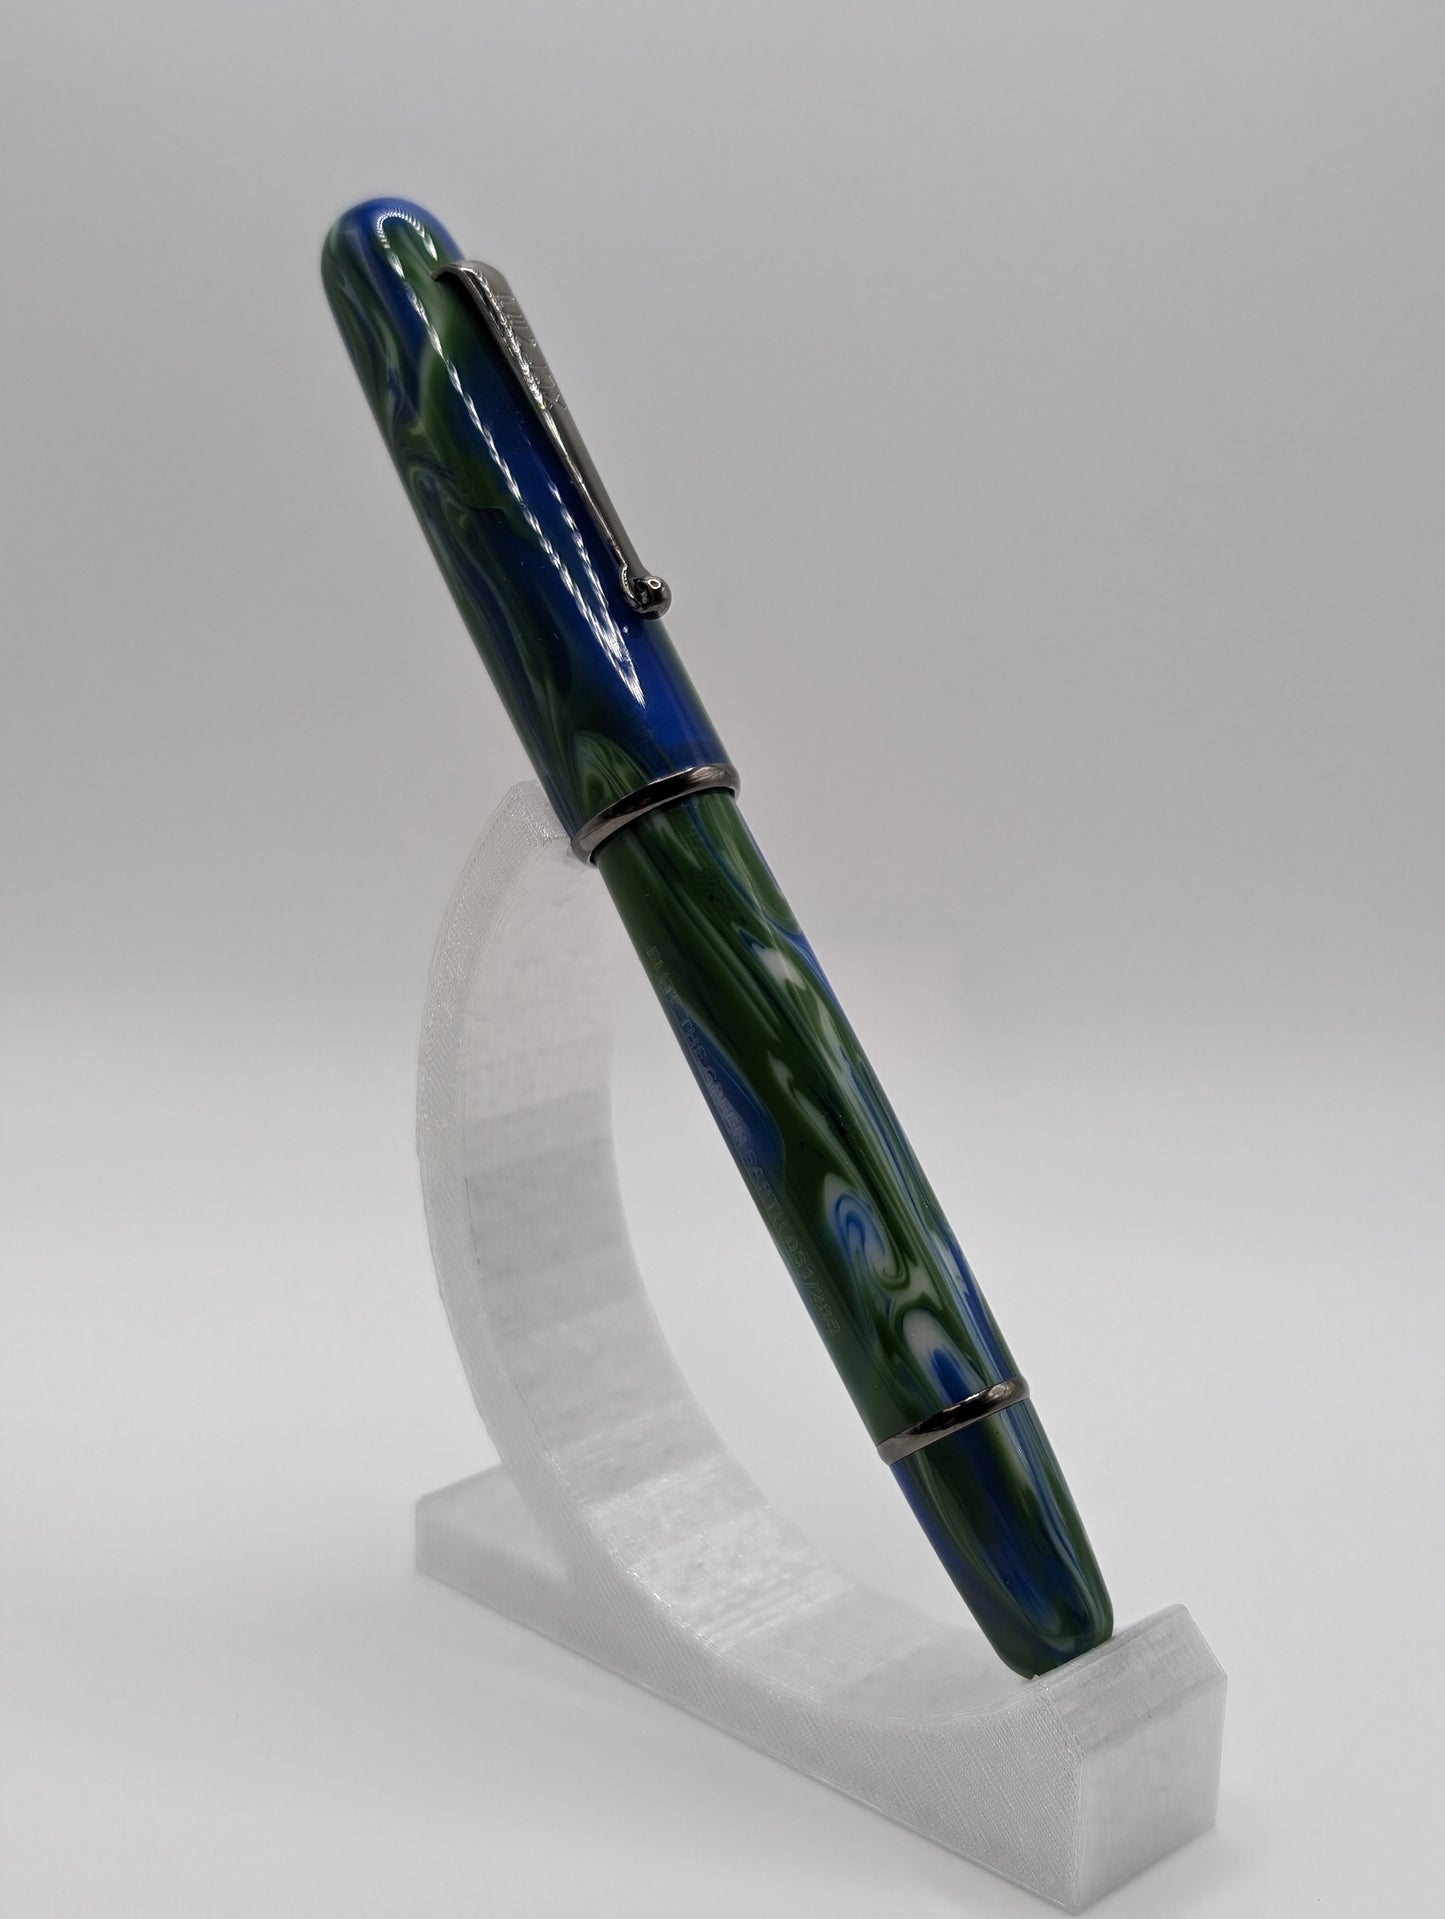 Penlux Limited Edition "The Green Earth" Delgado Fountain Pen